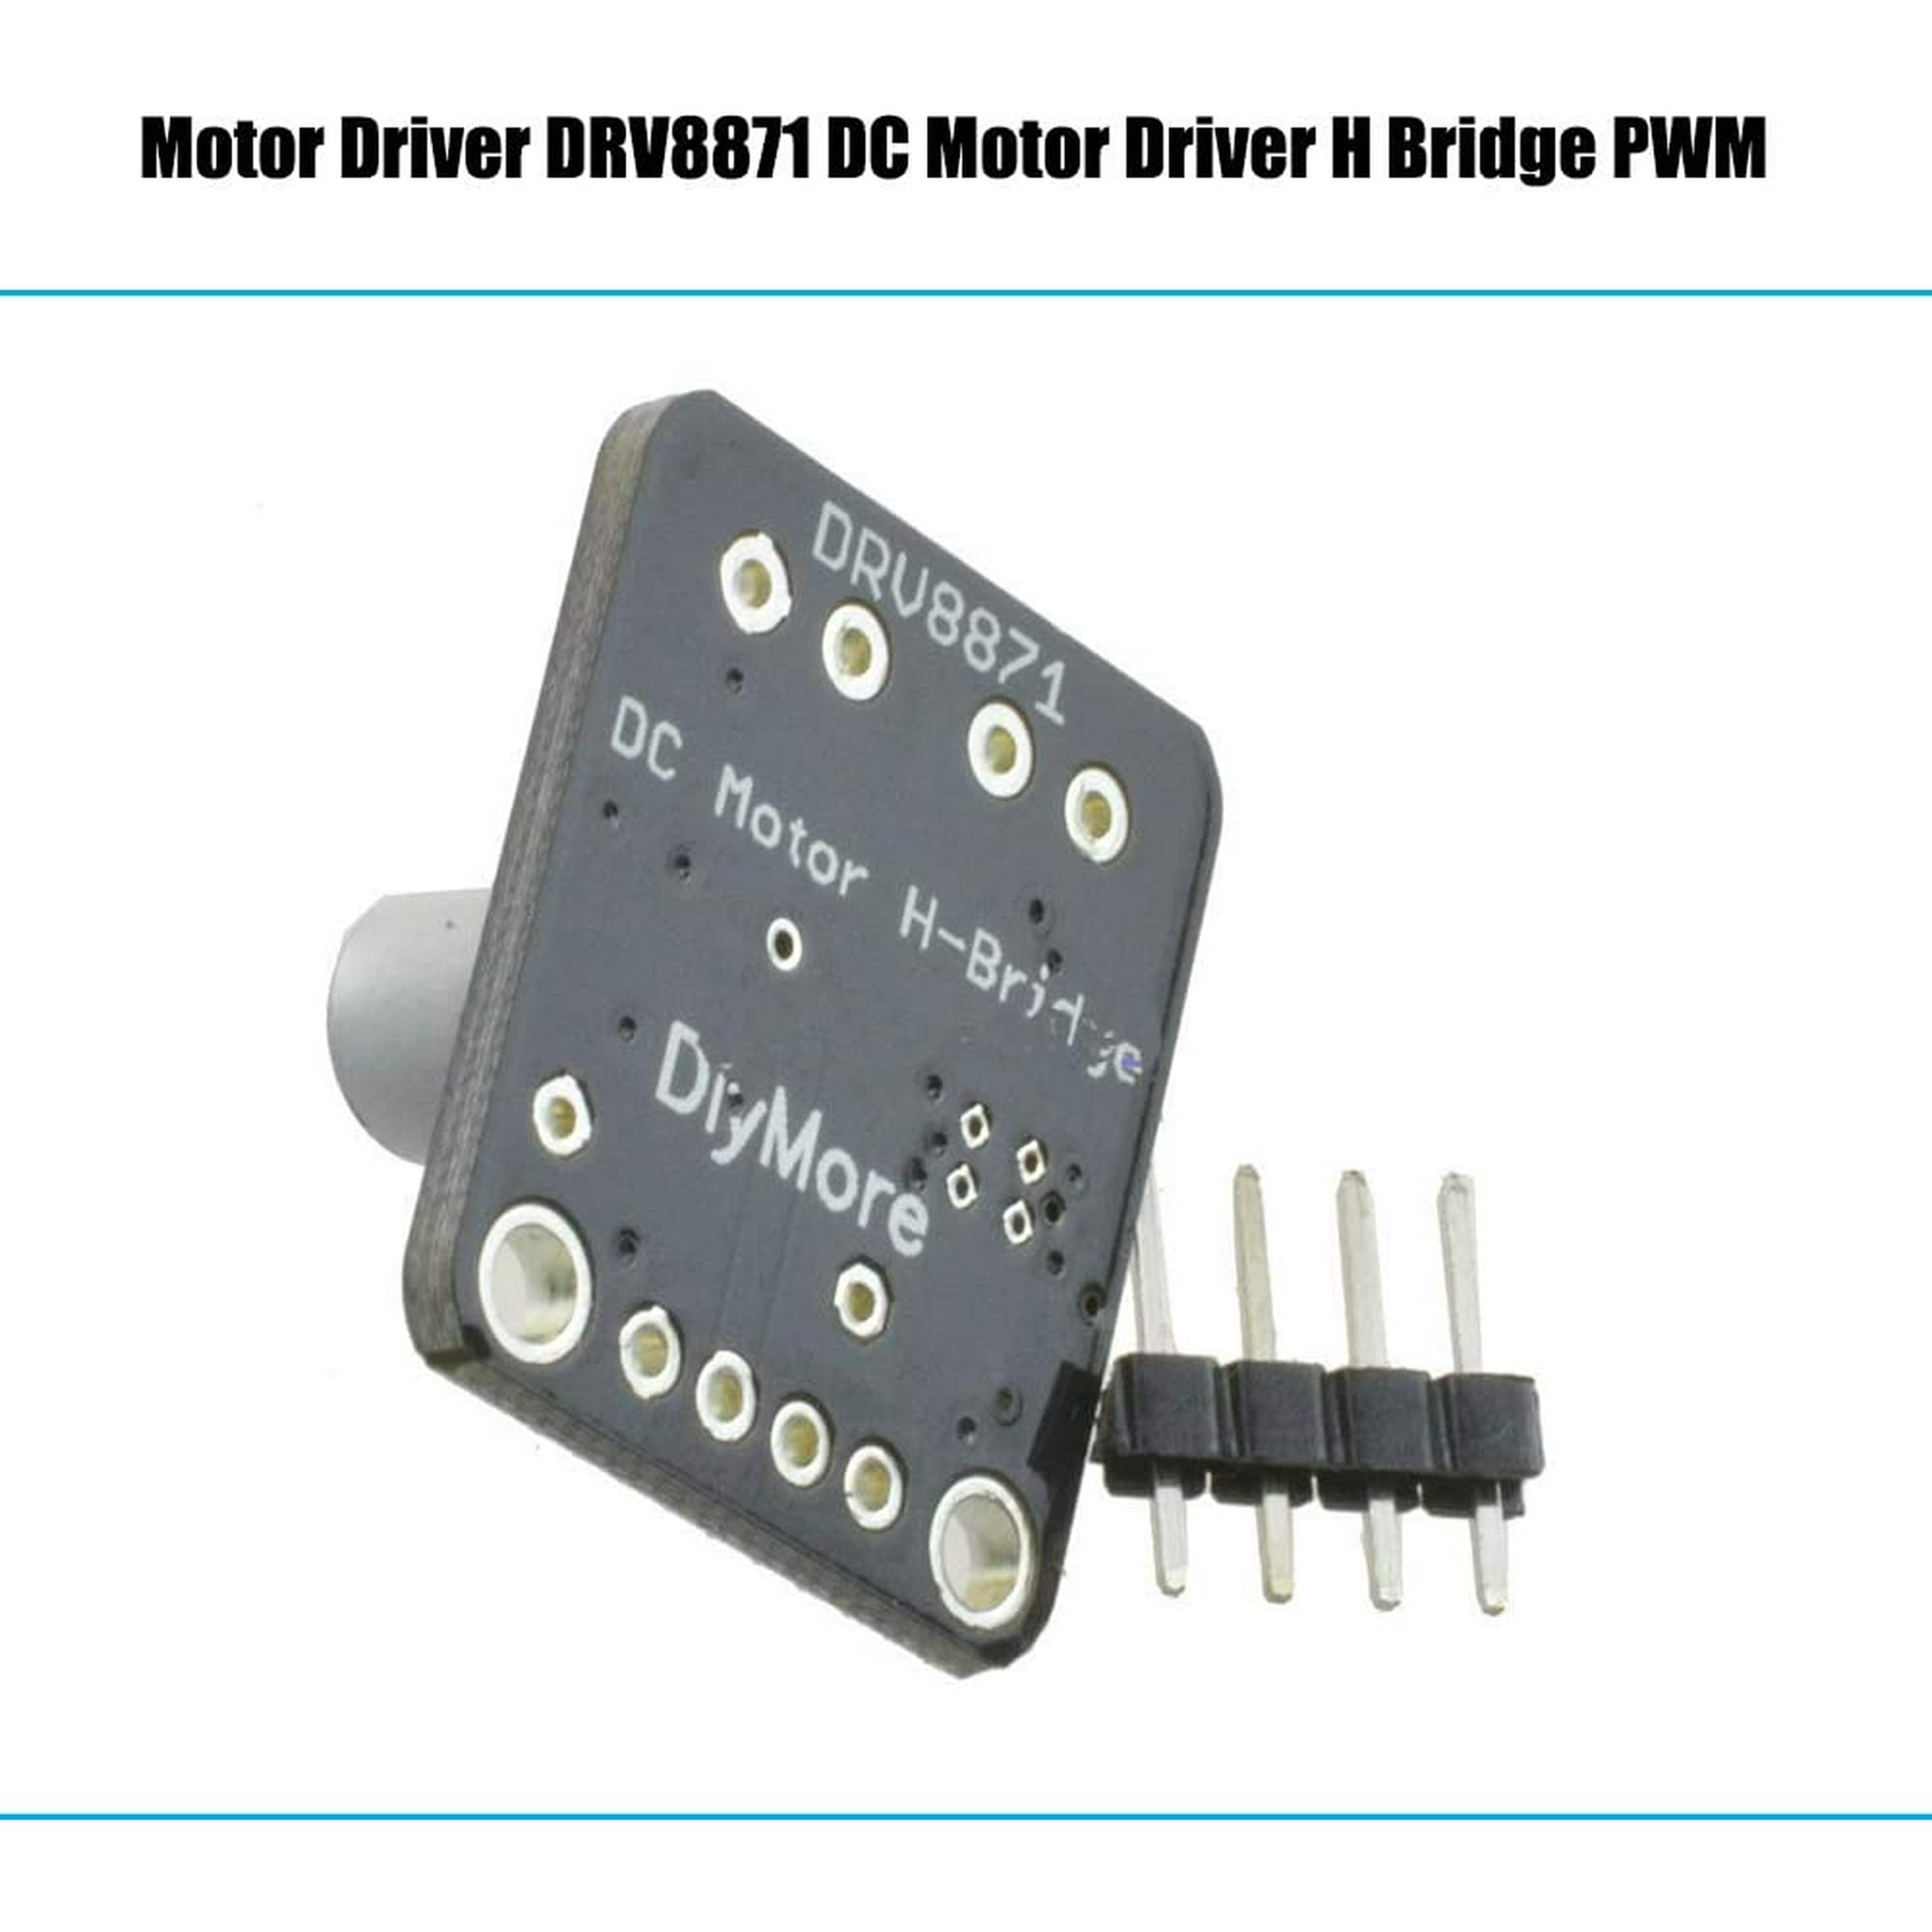 H-Bridge DC Motor Driver DRV8871 Breakout Board PWM Control Module 3.6A Arduino